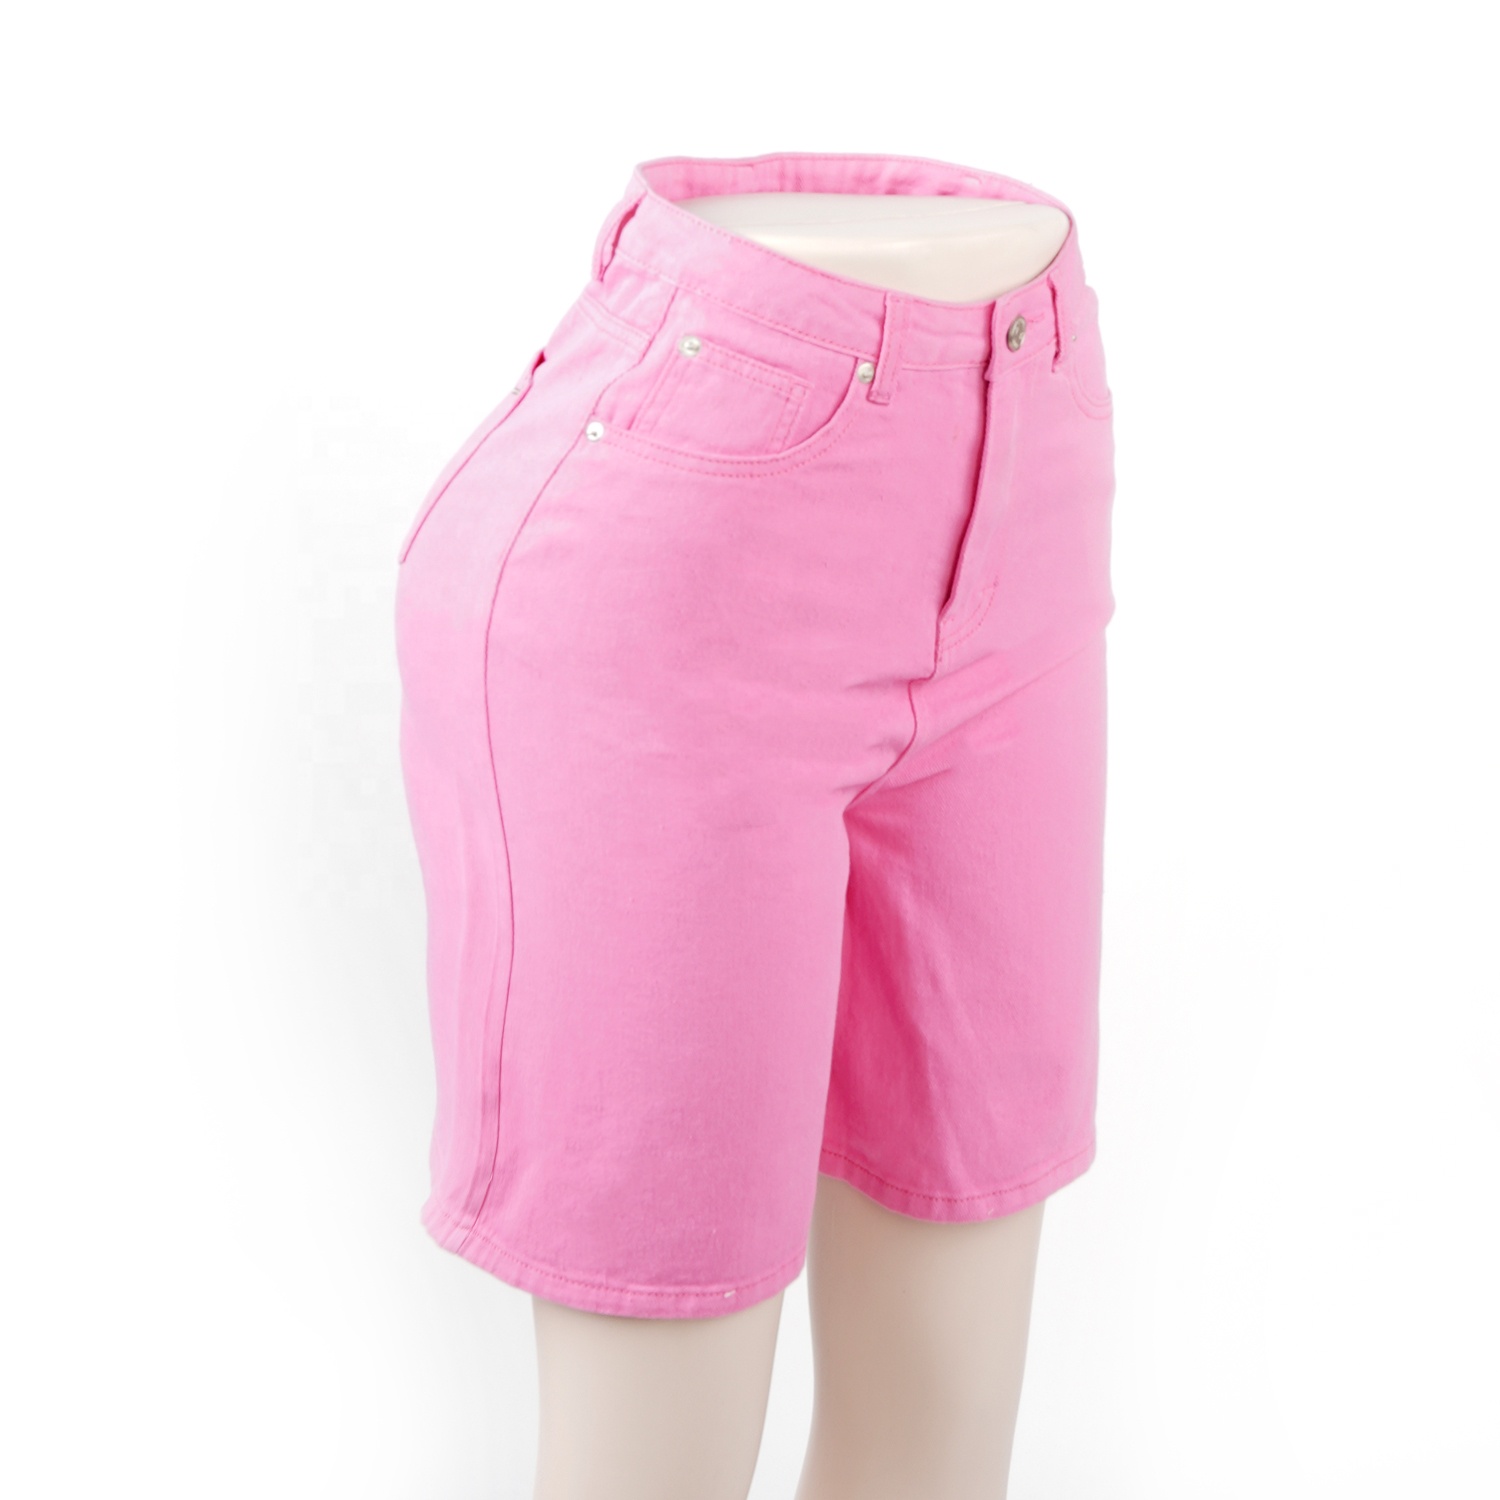 SKYKINGDOM 2020 design hot summer denim shorts high waist sexy ladies slim pink women shorts